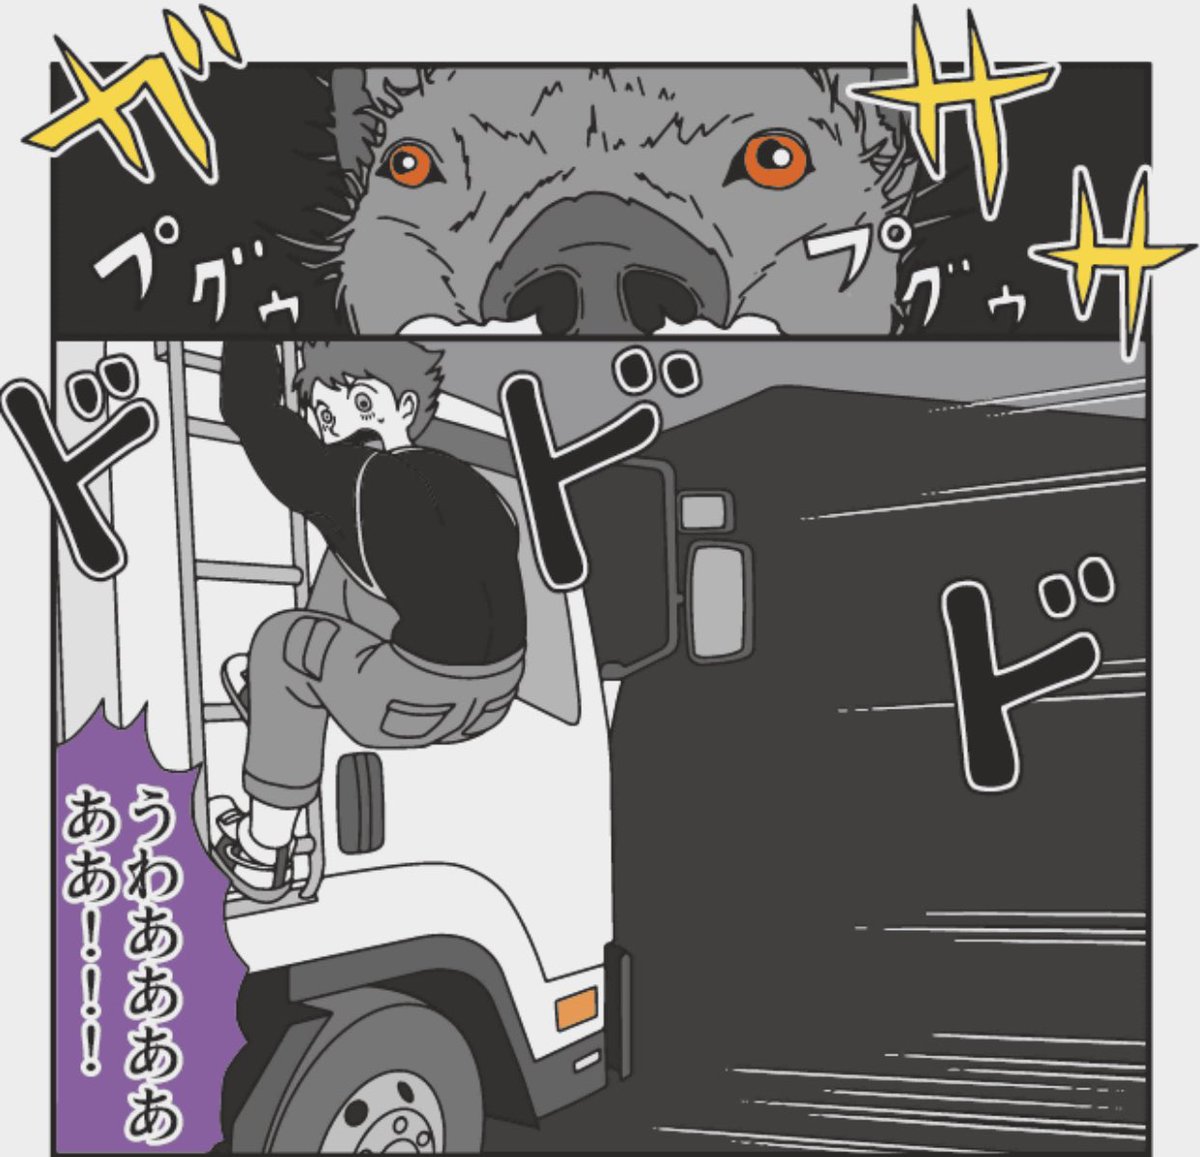 漫画 トラックの怪談
D通運 Tさん(25)

猛獣
大きい獣怖い 